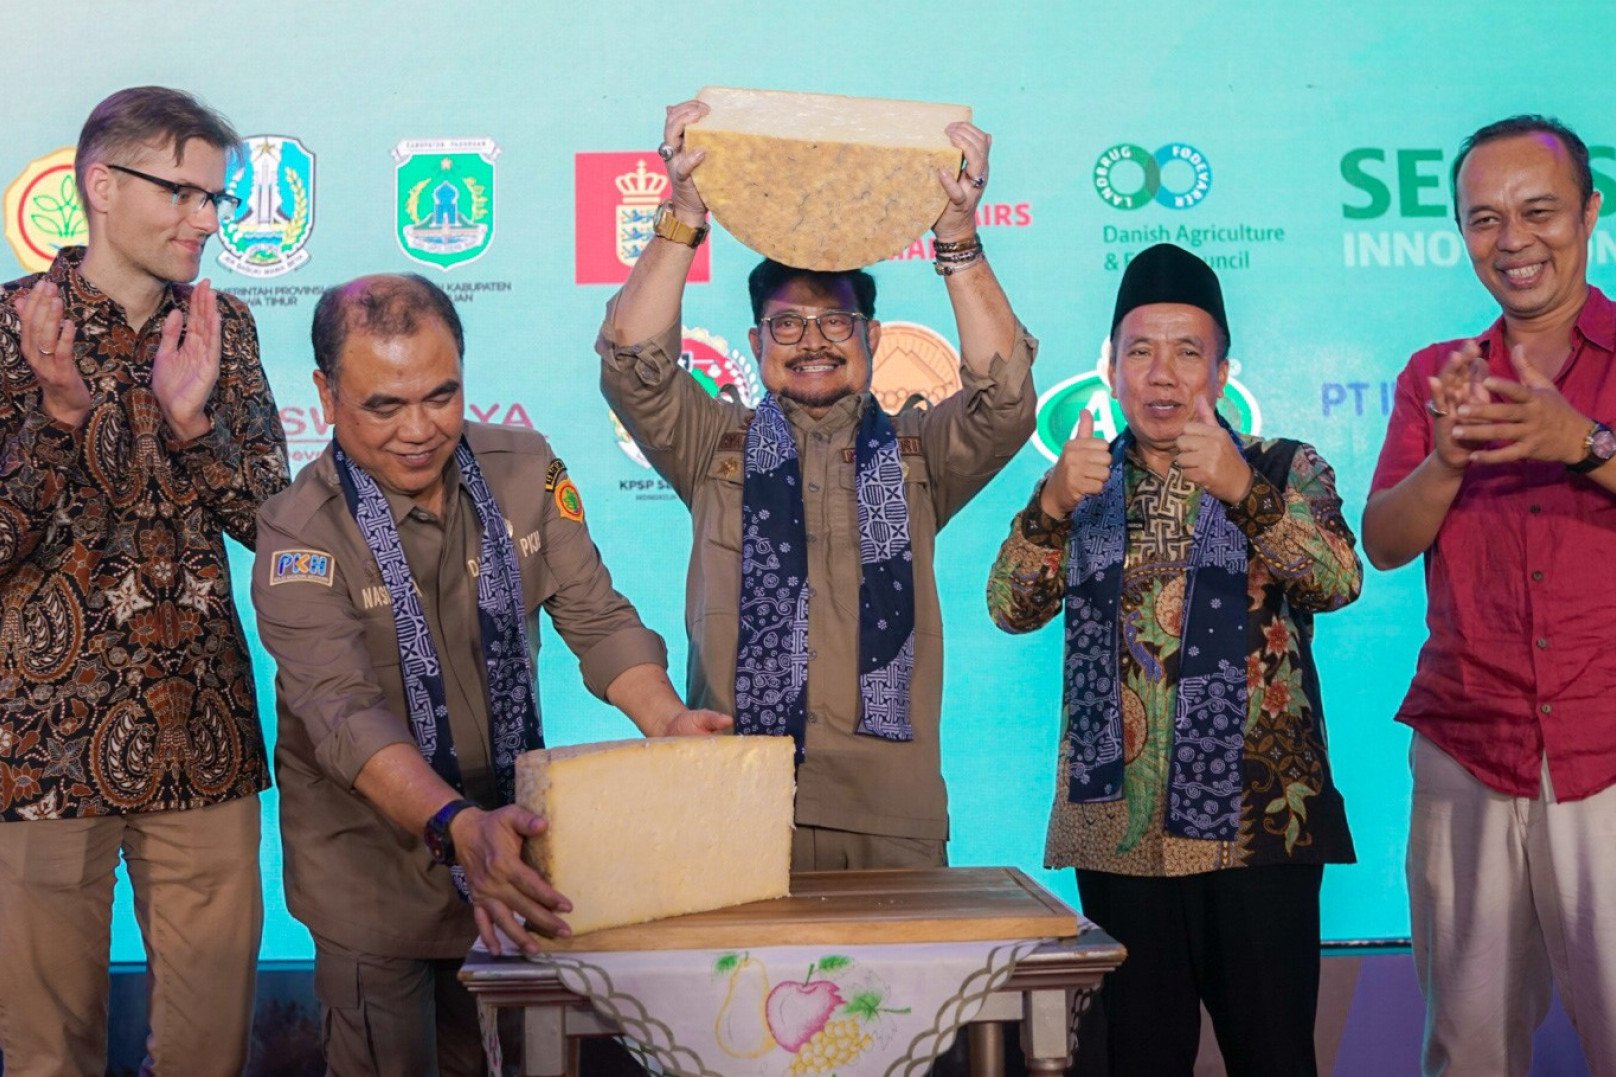 den indonesiske landbrugsminister, Syahrul Yasin Limpo osten over hovedet, som var det en pokal